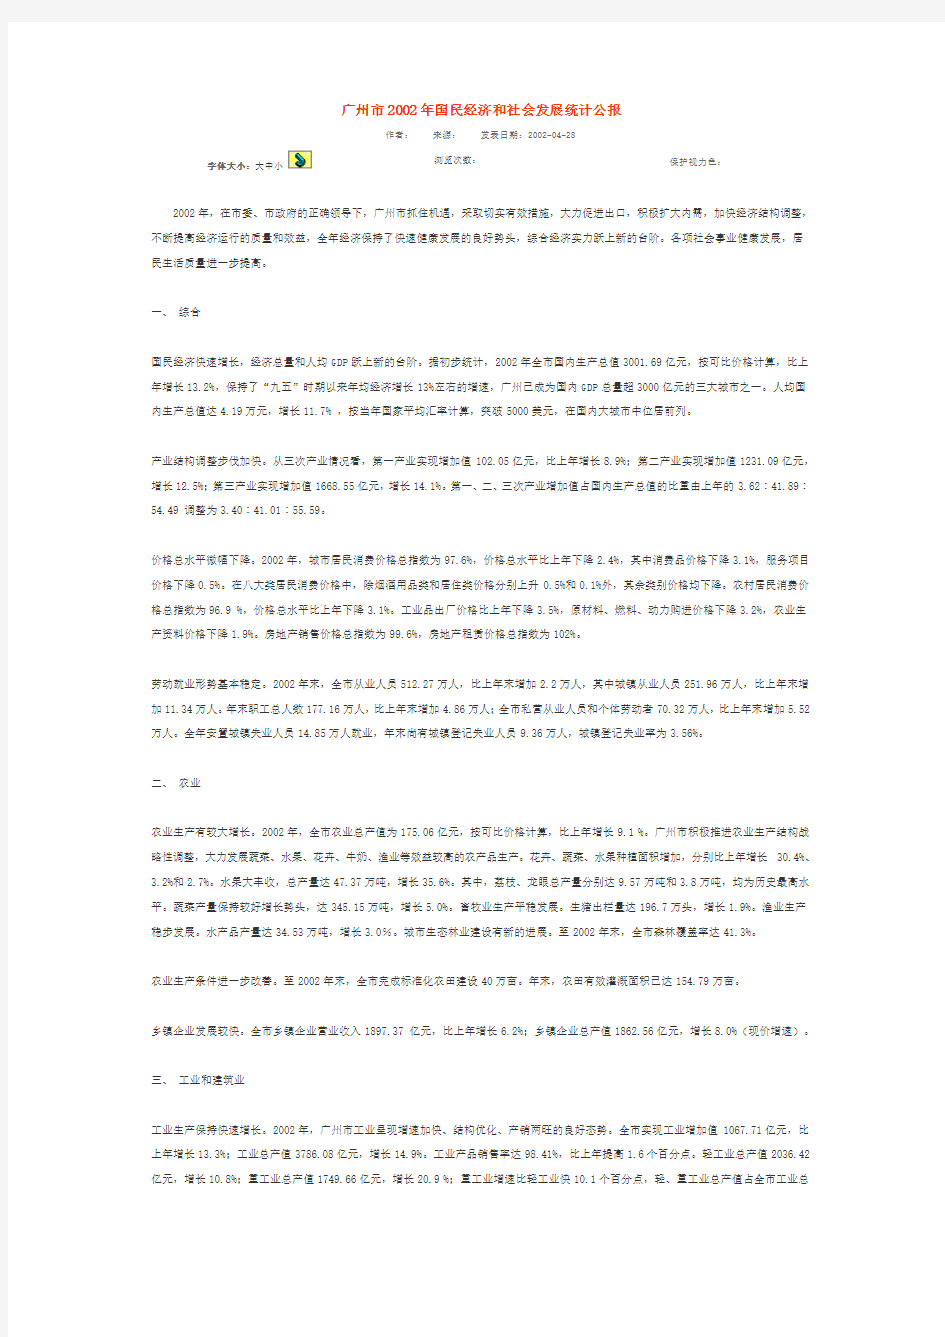 广州市2002年国民经济和社会发展统计公报